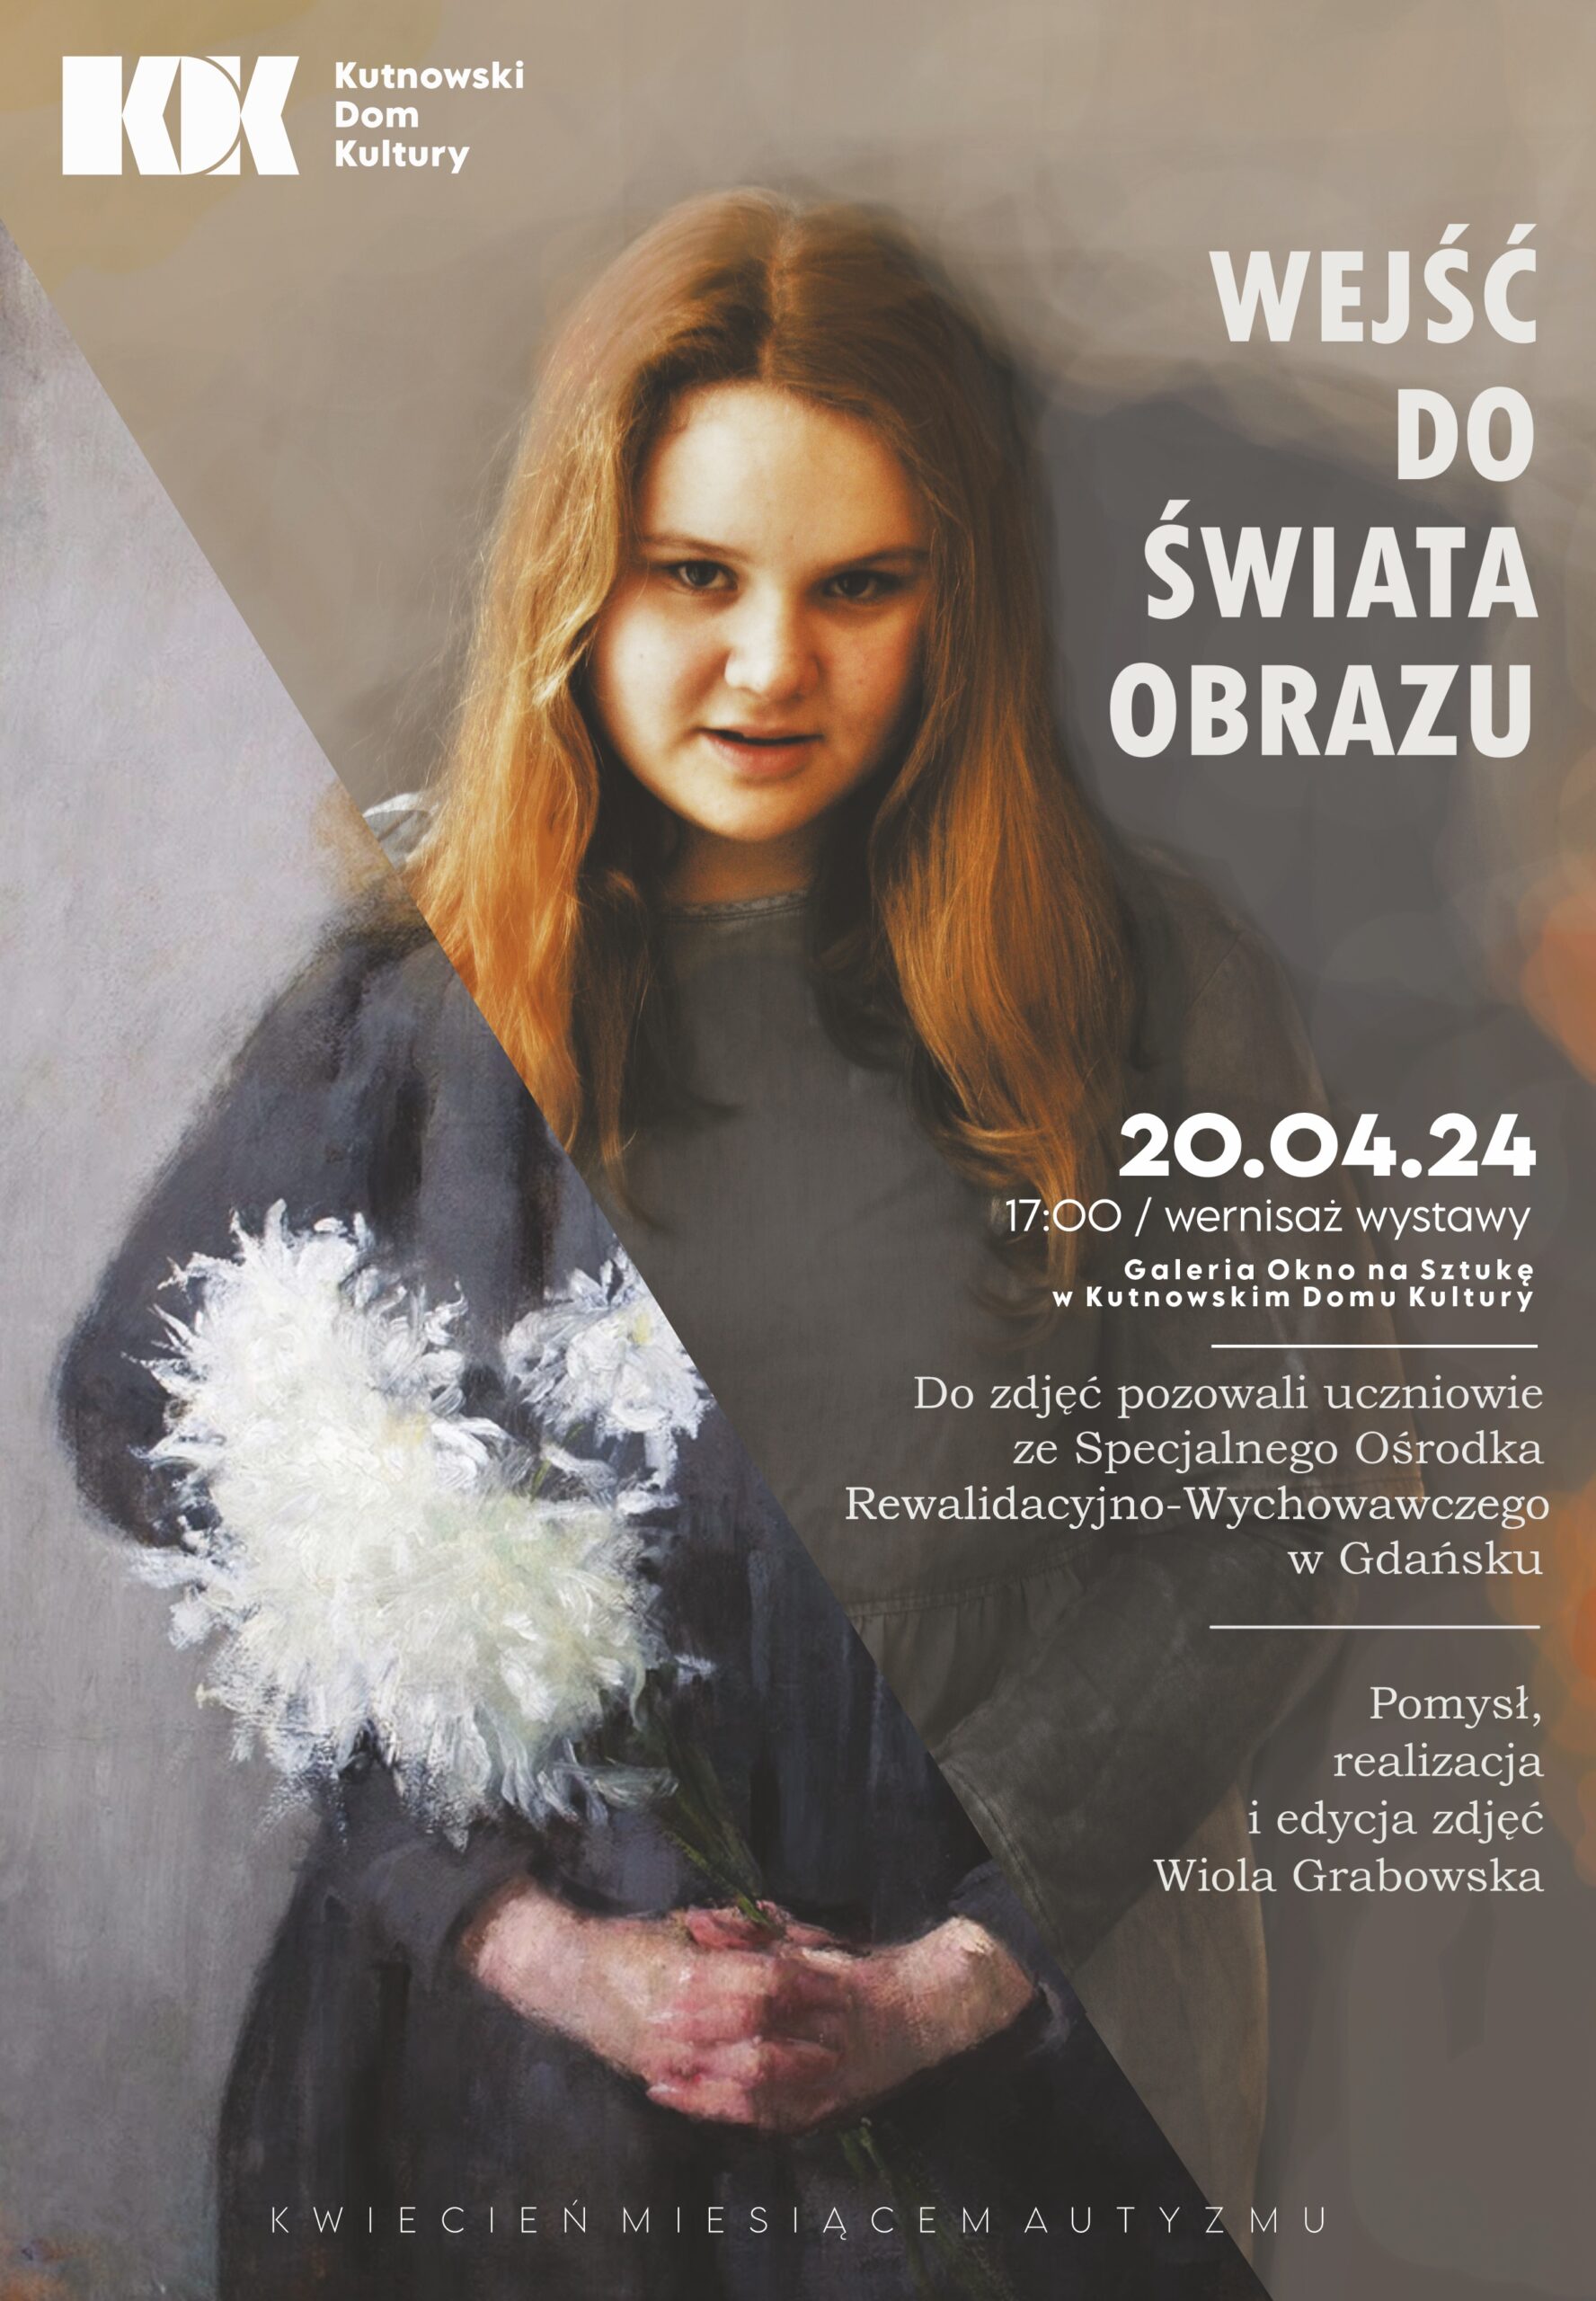 Plakat promujący wydarzenie "Wejść do świata obrazu" - Wernisaż wystawy fotografii Wioli Grabowskiej